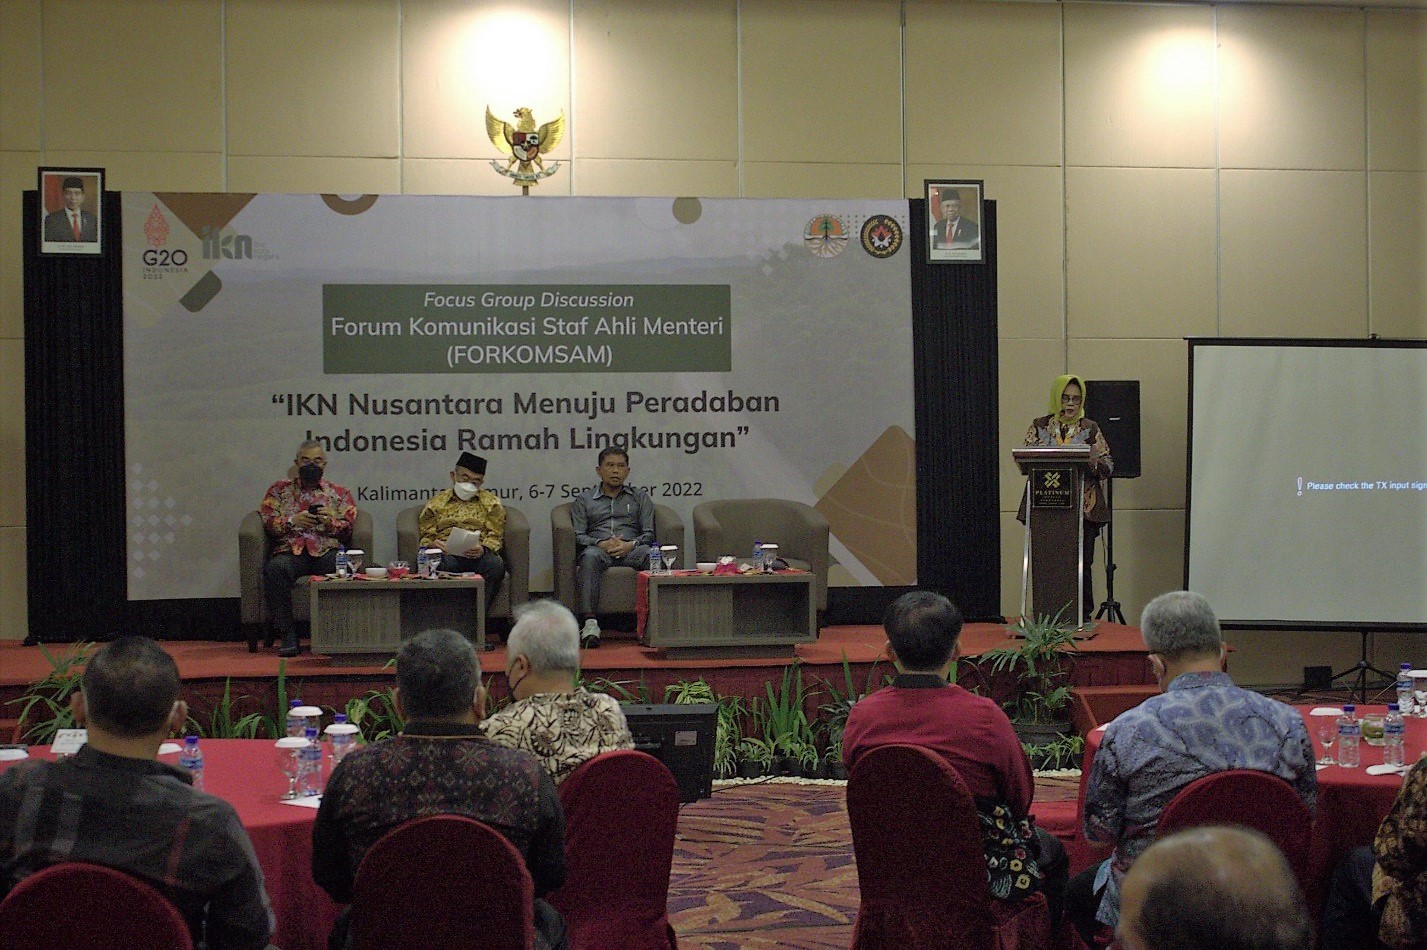 You are currently viewing FGD Forum Komunikasi Staff Ahli Menteri (Forkomsam) : IKN Nusantara menuju Peradaban Indonesia Ramah Lingkungan